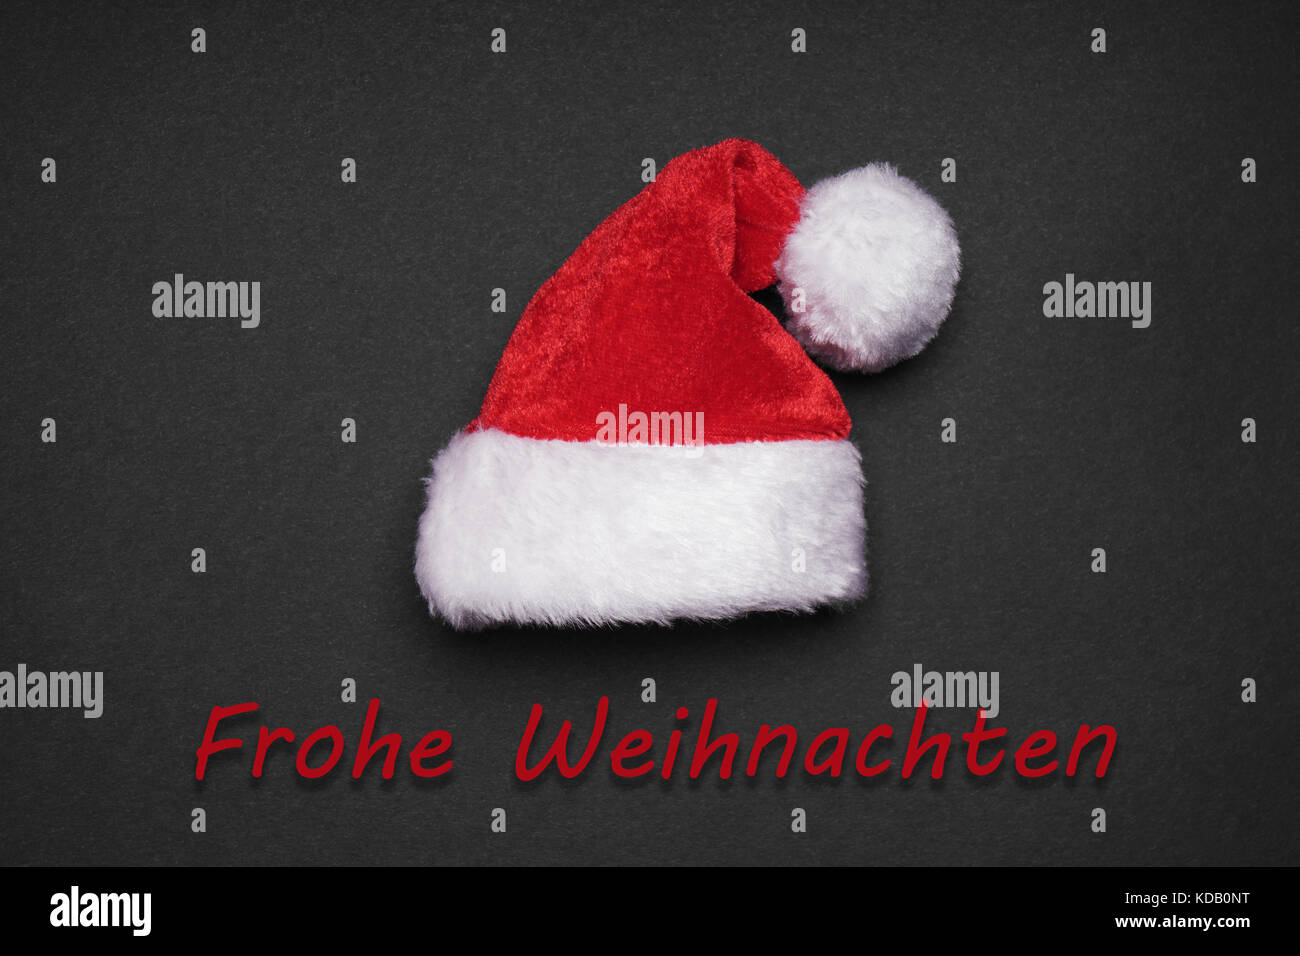 Frohe weihnachten veut dire joyeux noël en allemand Banque D'Images